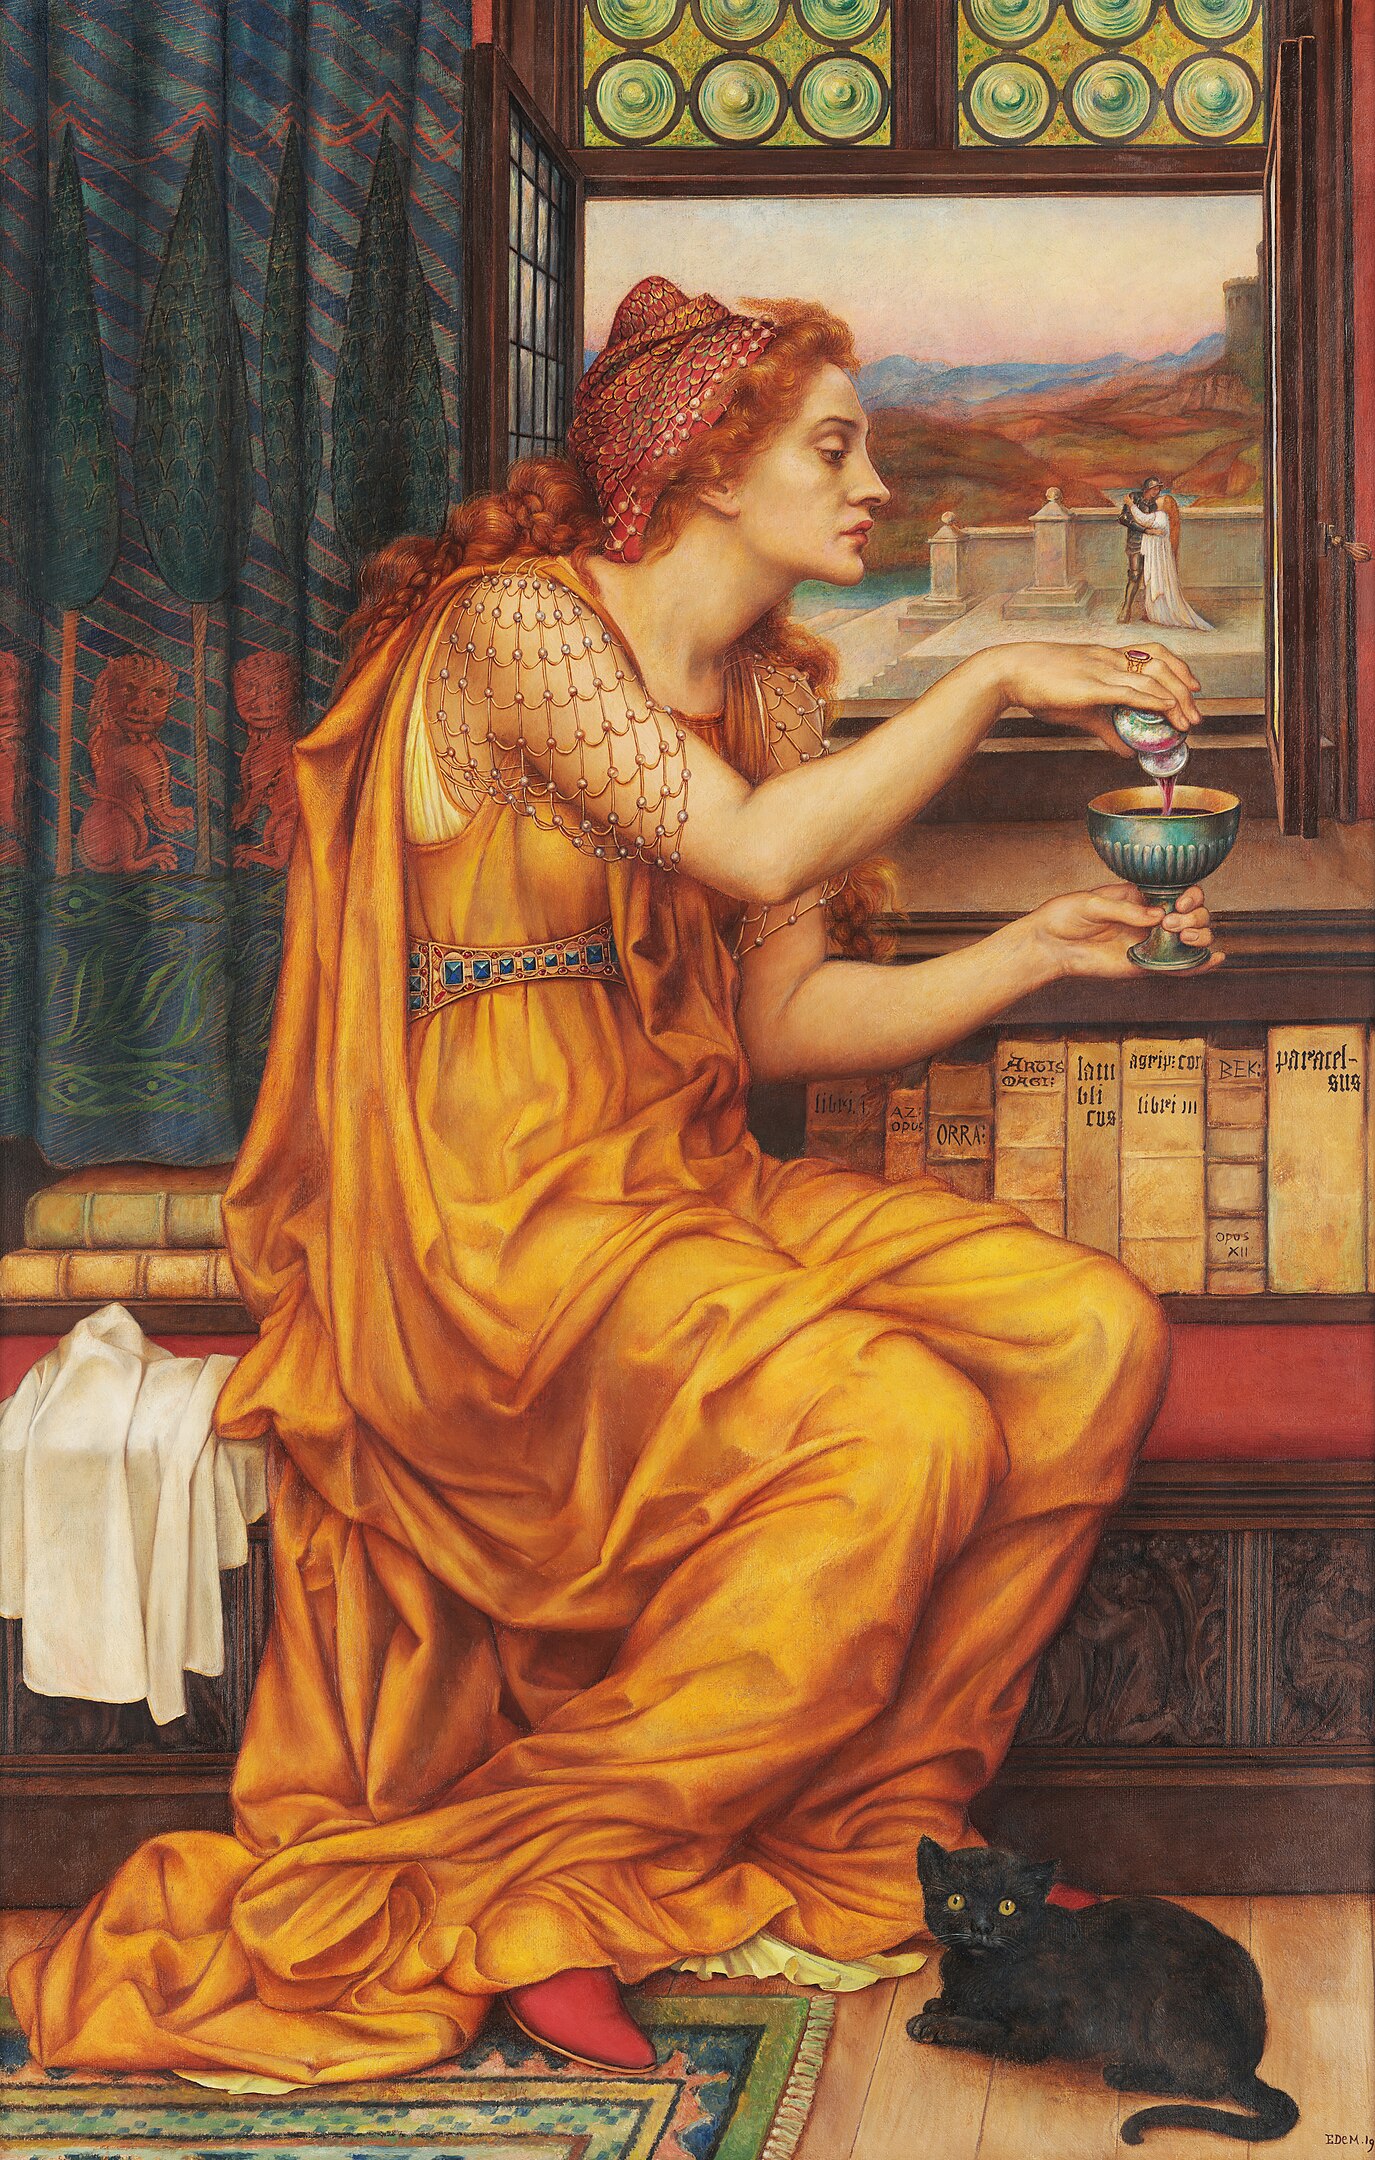 La poción de amor by Evelyn de Morgan - 1903 - 104,1 x 52,1 cm Colección privada